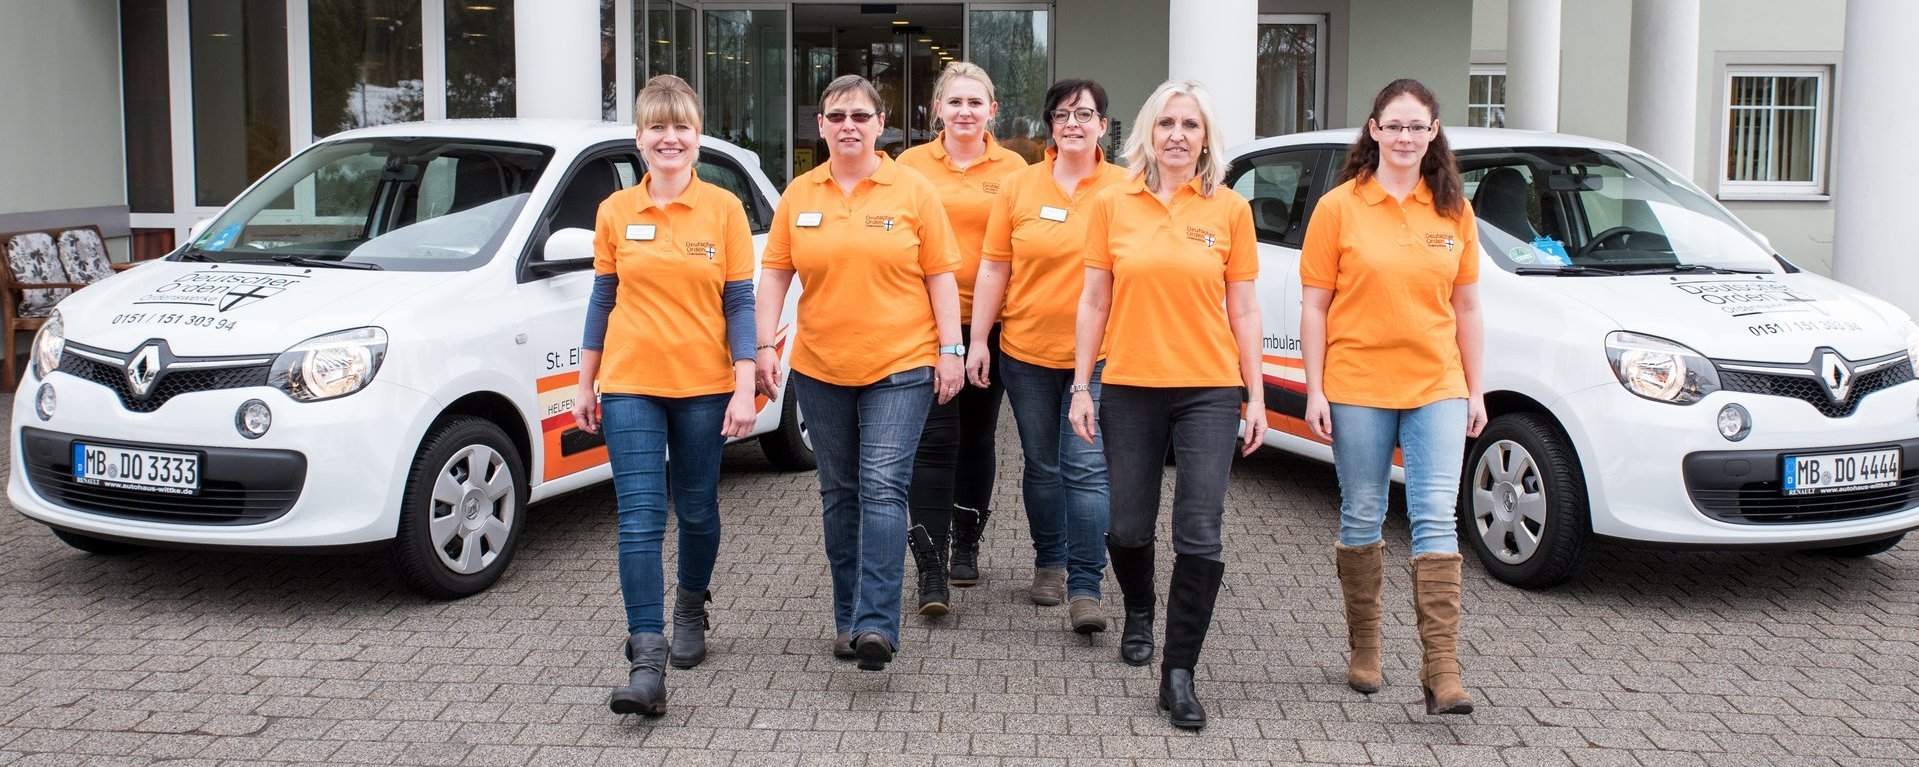 Vor einem Gebäudeeingang stehen zwei Fahrzeuge des Pflegedienstes Wunsiedel. Im Vordergrund gehen sechs Mitarbeiterinnen in orangenen T-Shirts lächelnd auf den Betrachter zu.